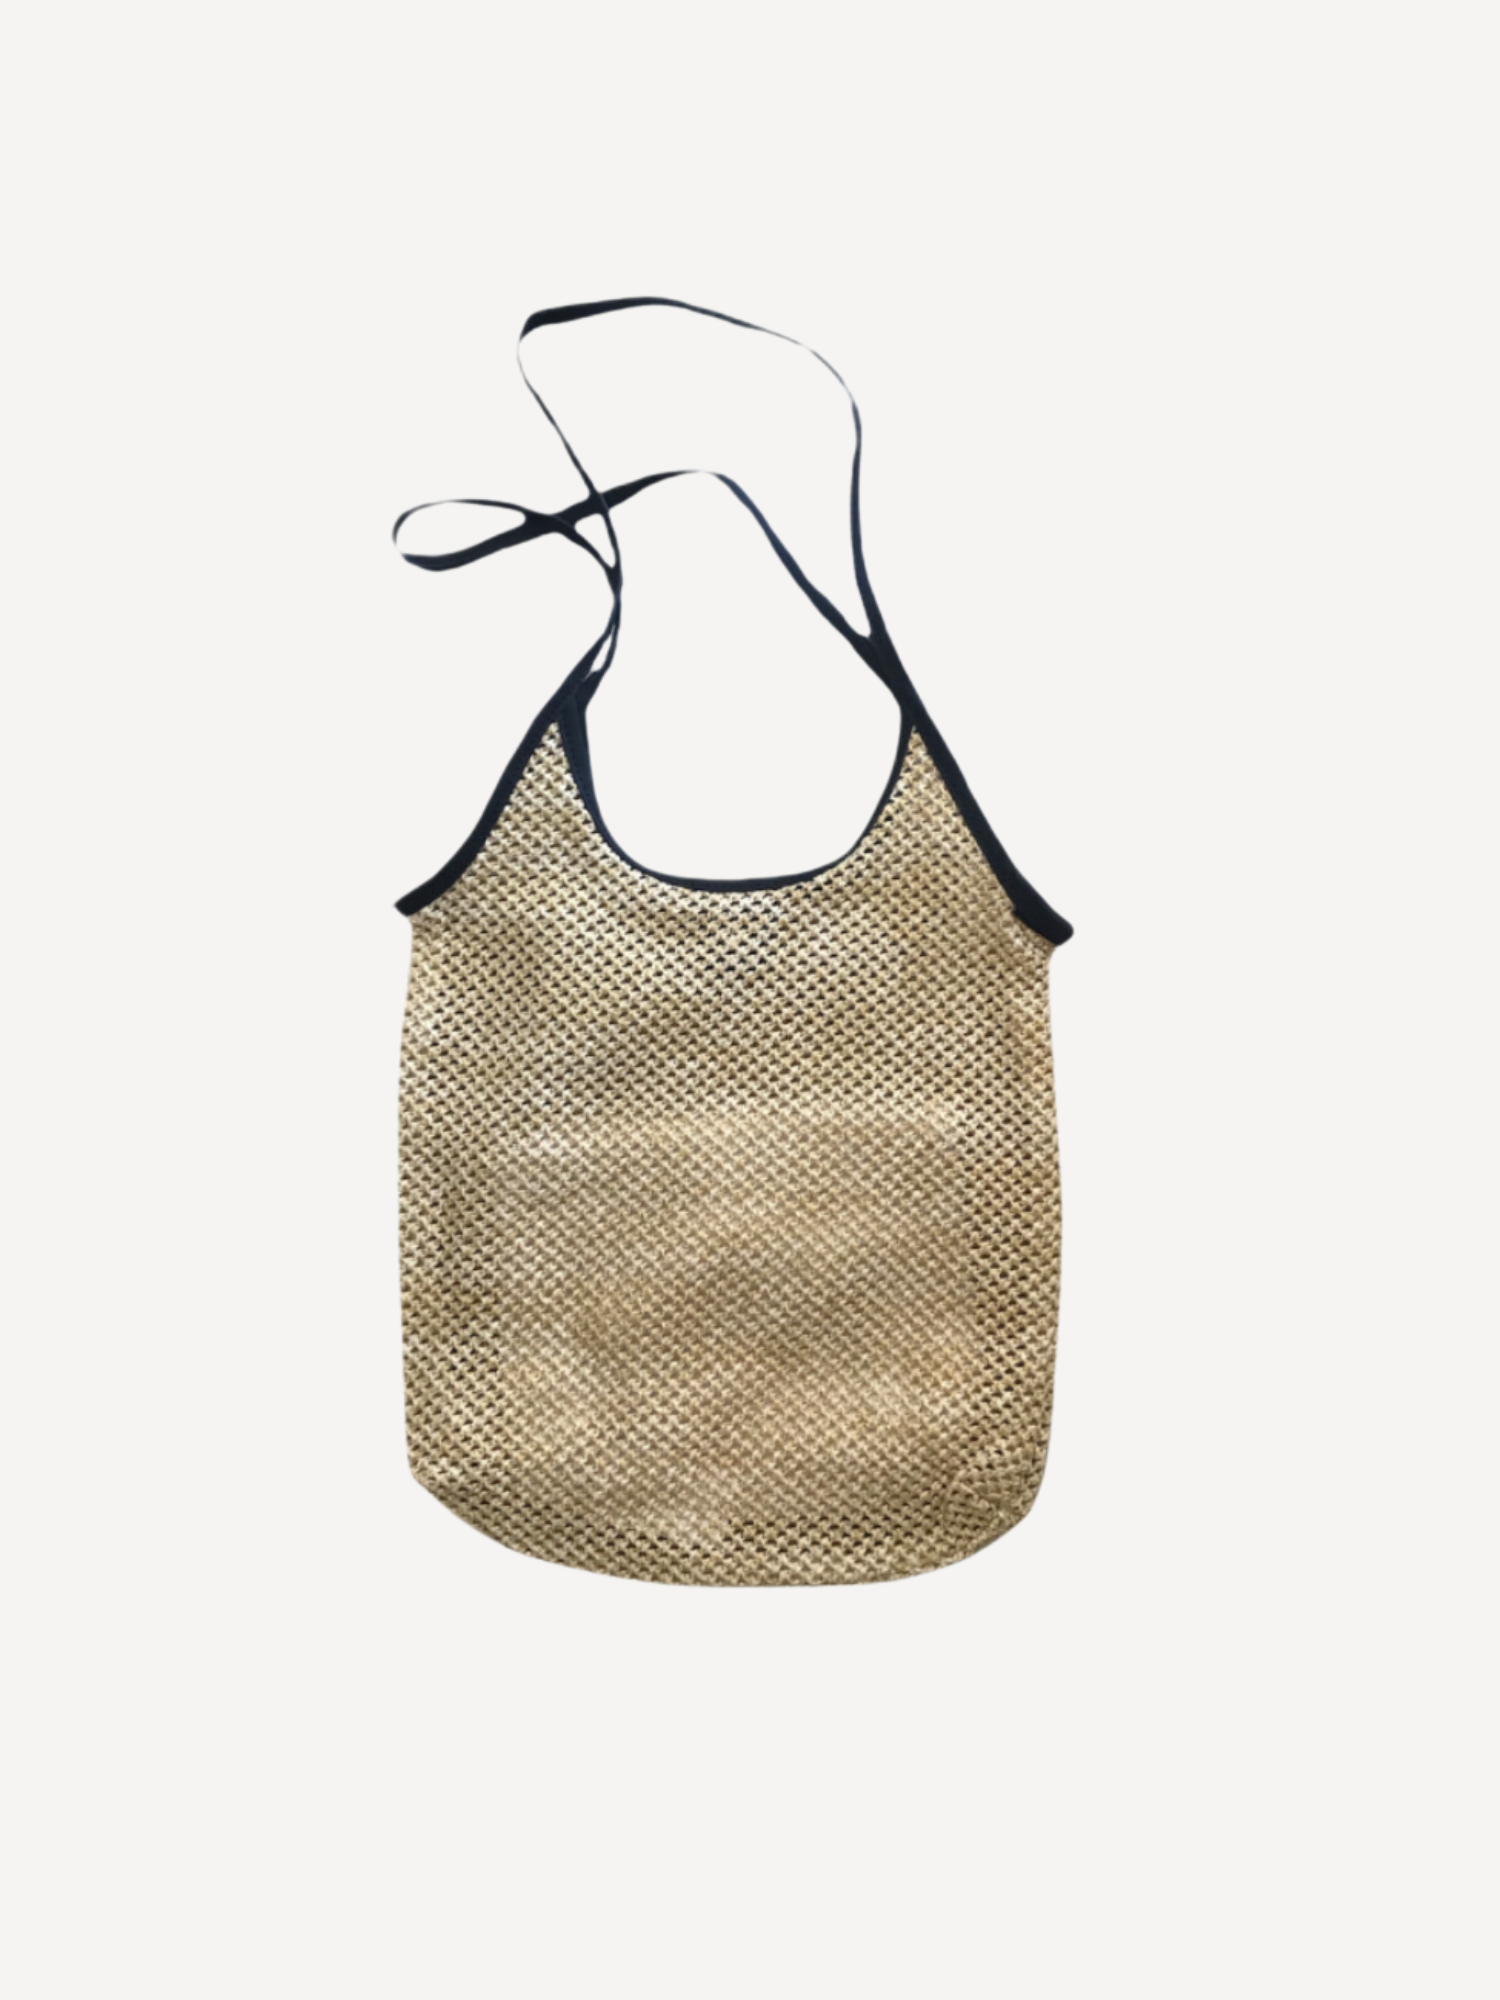 Woven Shoulder Bag - Black Trim